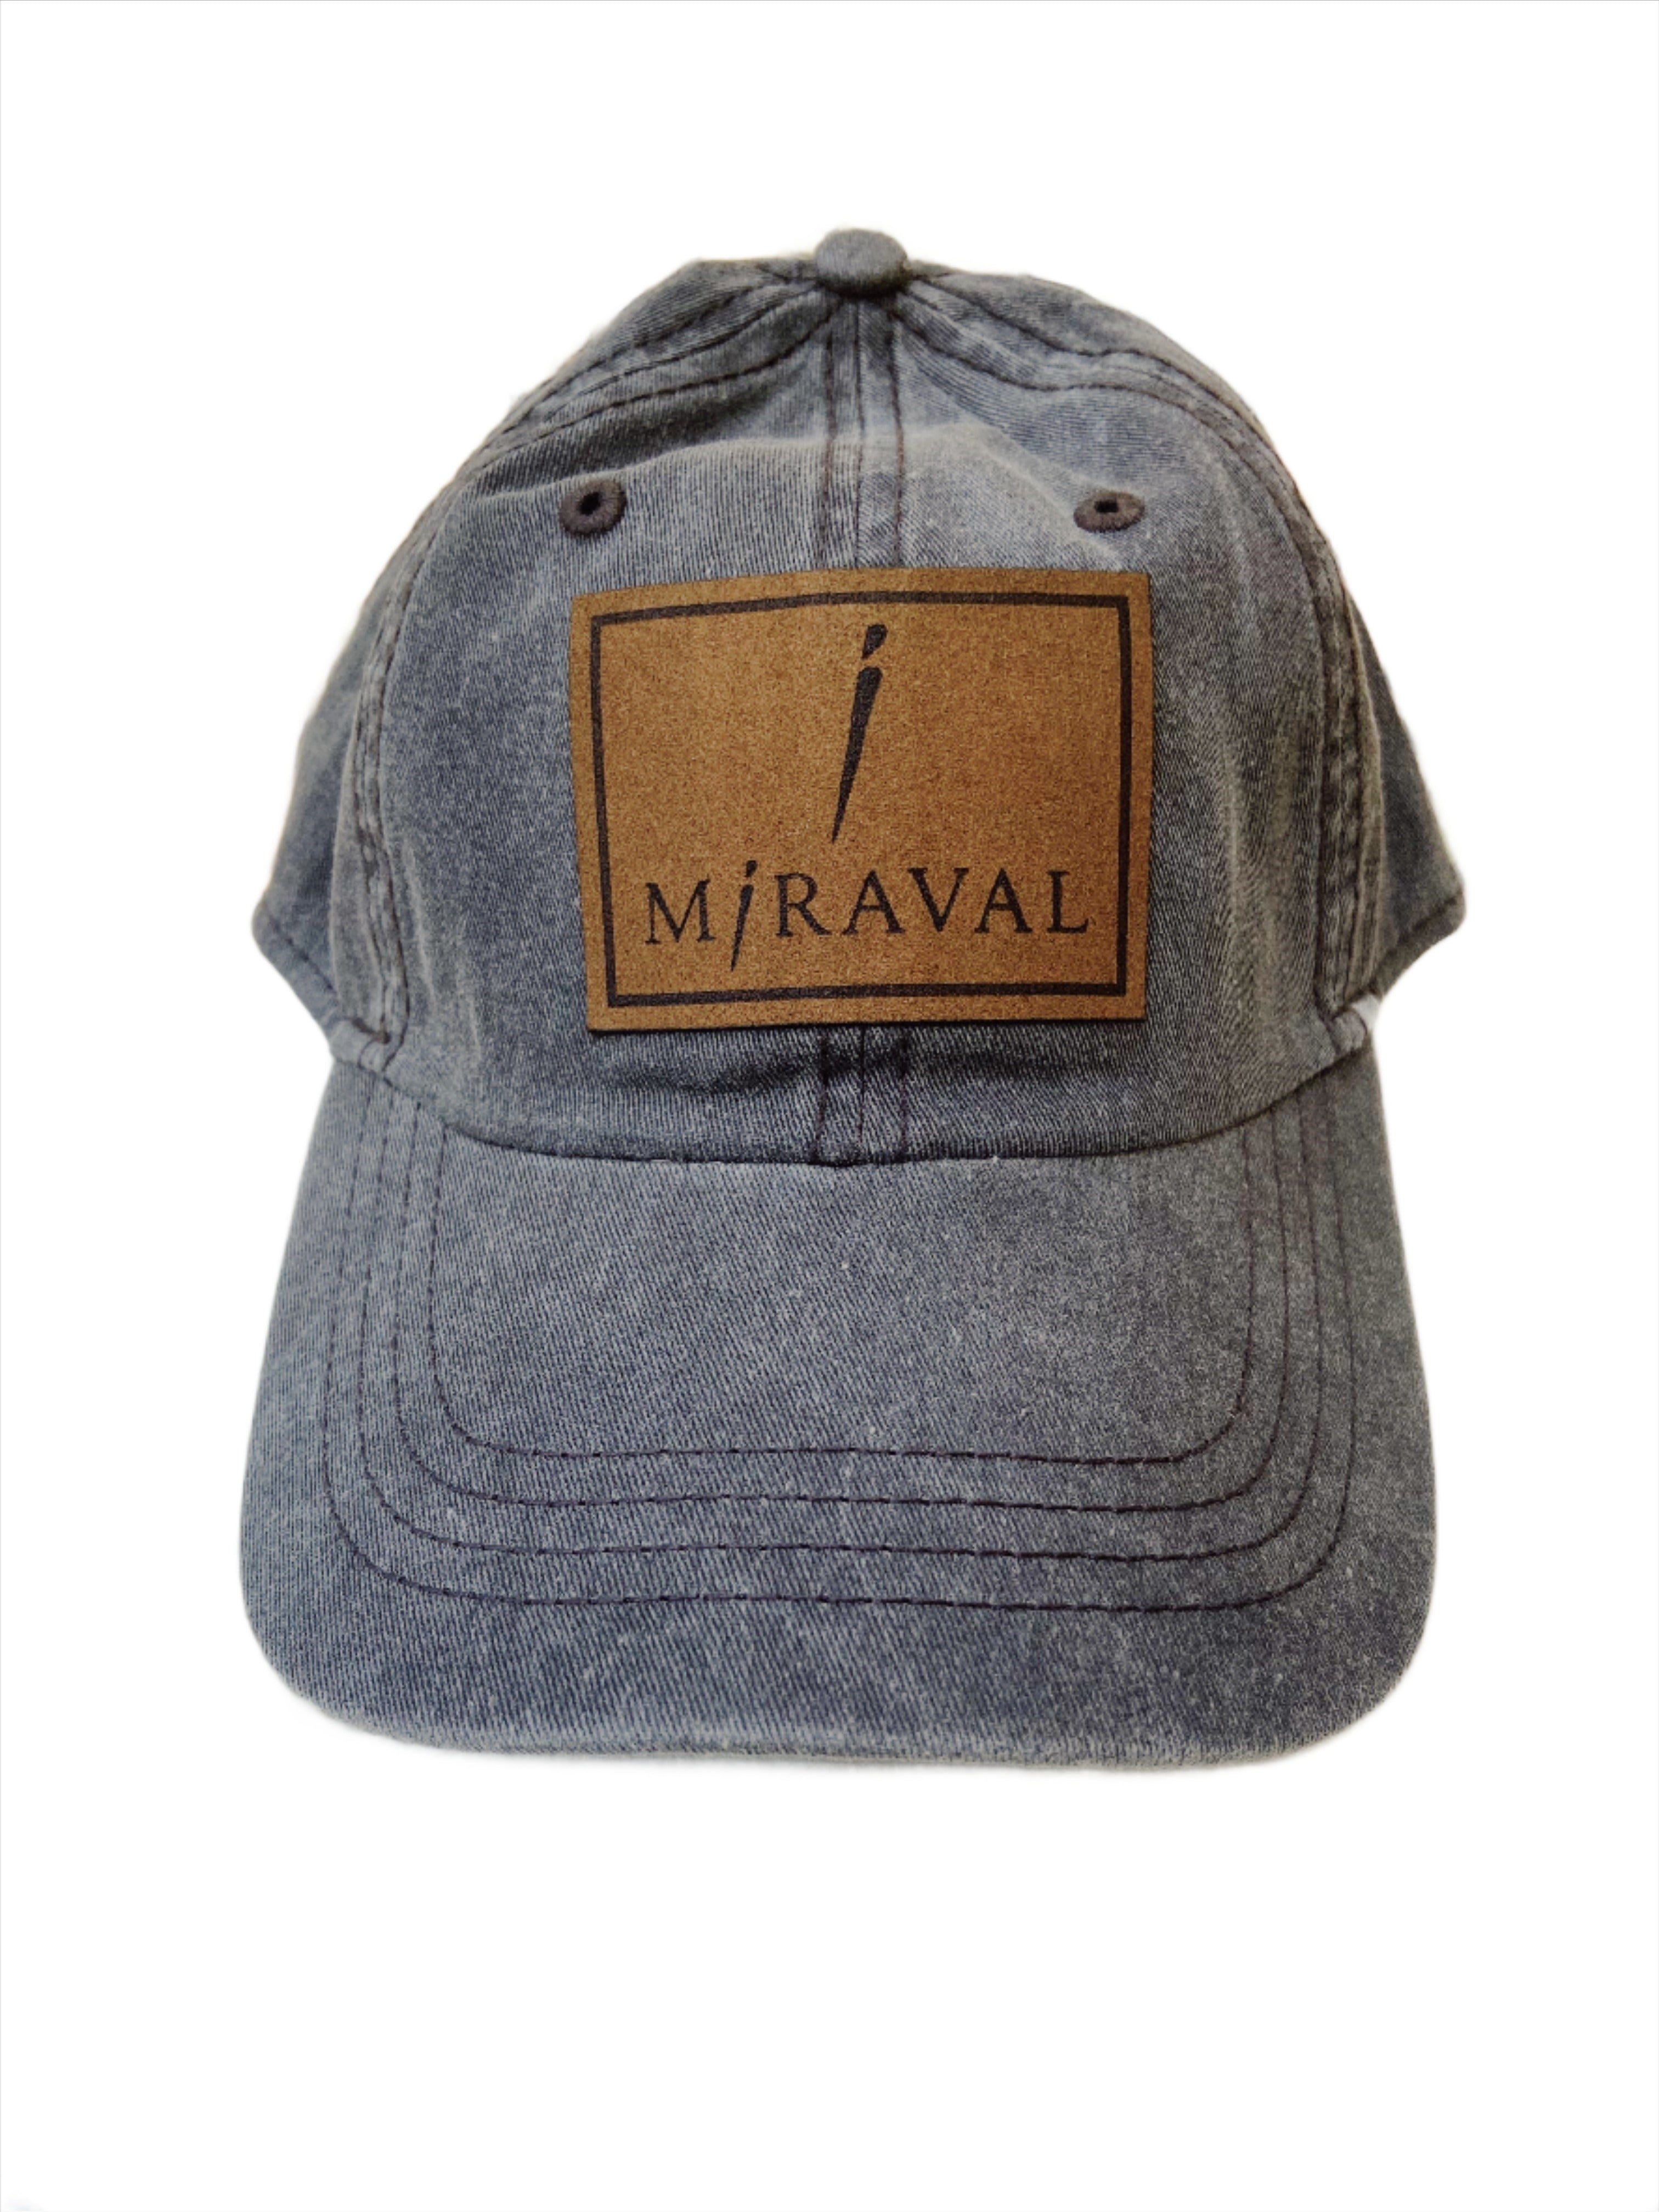 Miraval "i" Hat